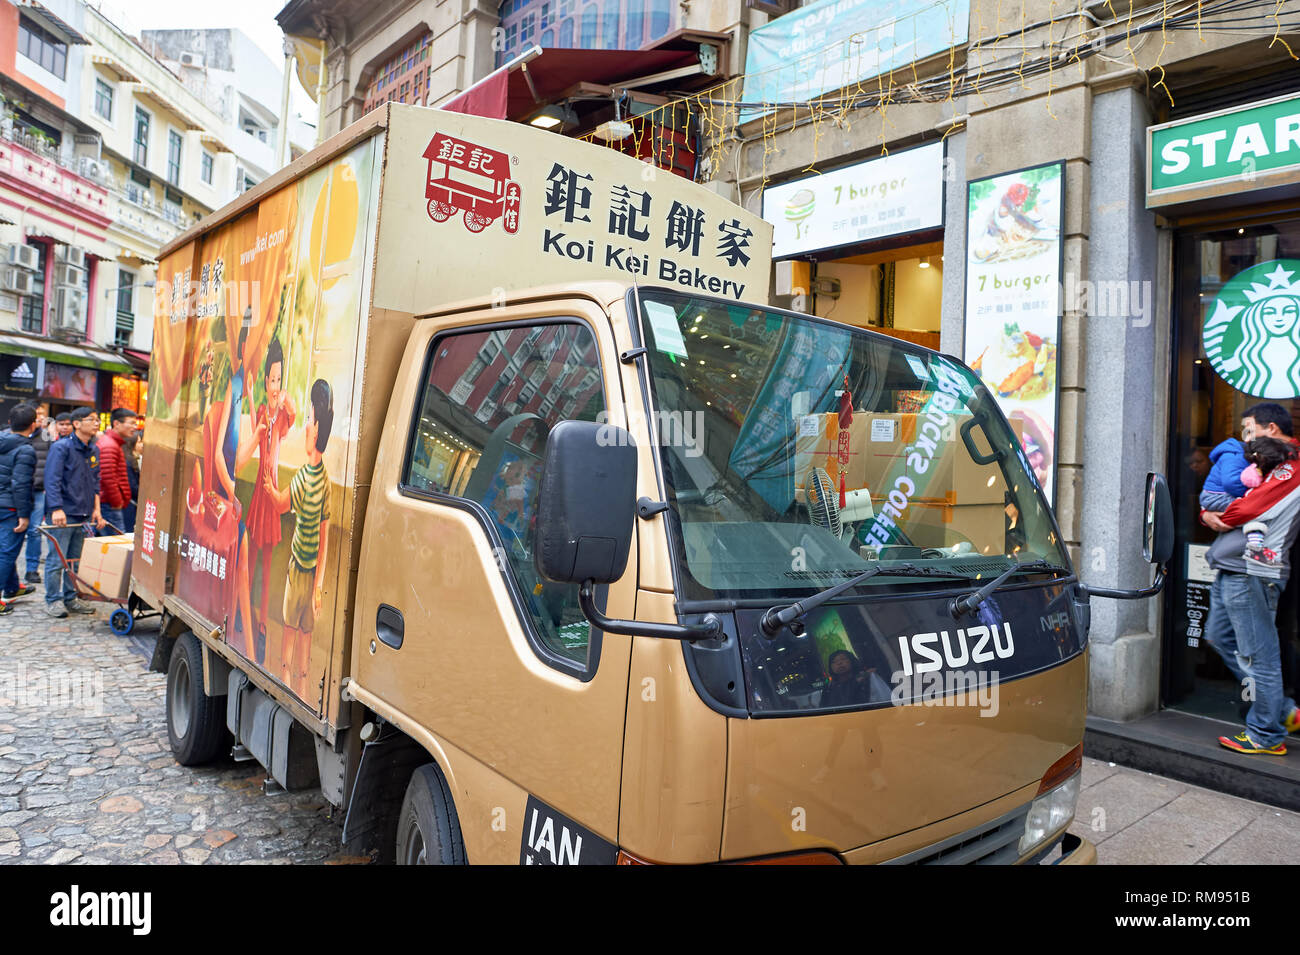 Macau - ca. Februar 2016: Isuzu Light Truck in Macau. Macau ist ein autonomes Gebiet auf der westlichen Seite des Pearl River Delta in Ostasien. Stockfoto